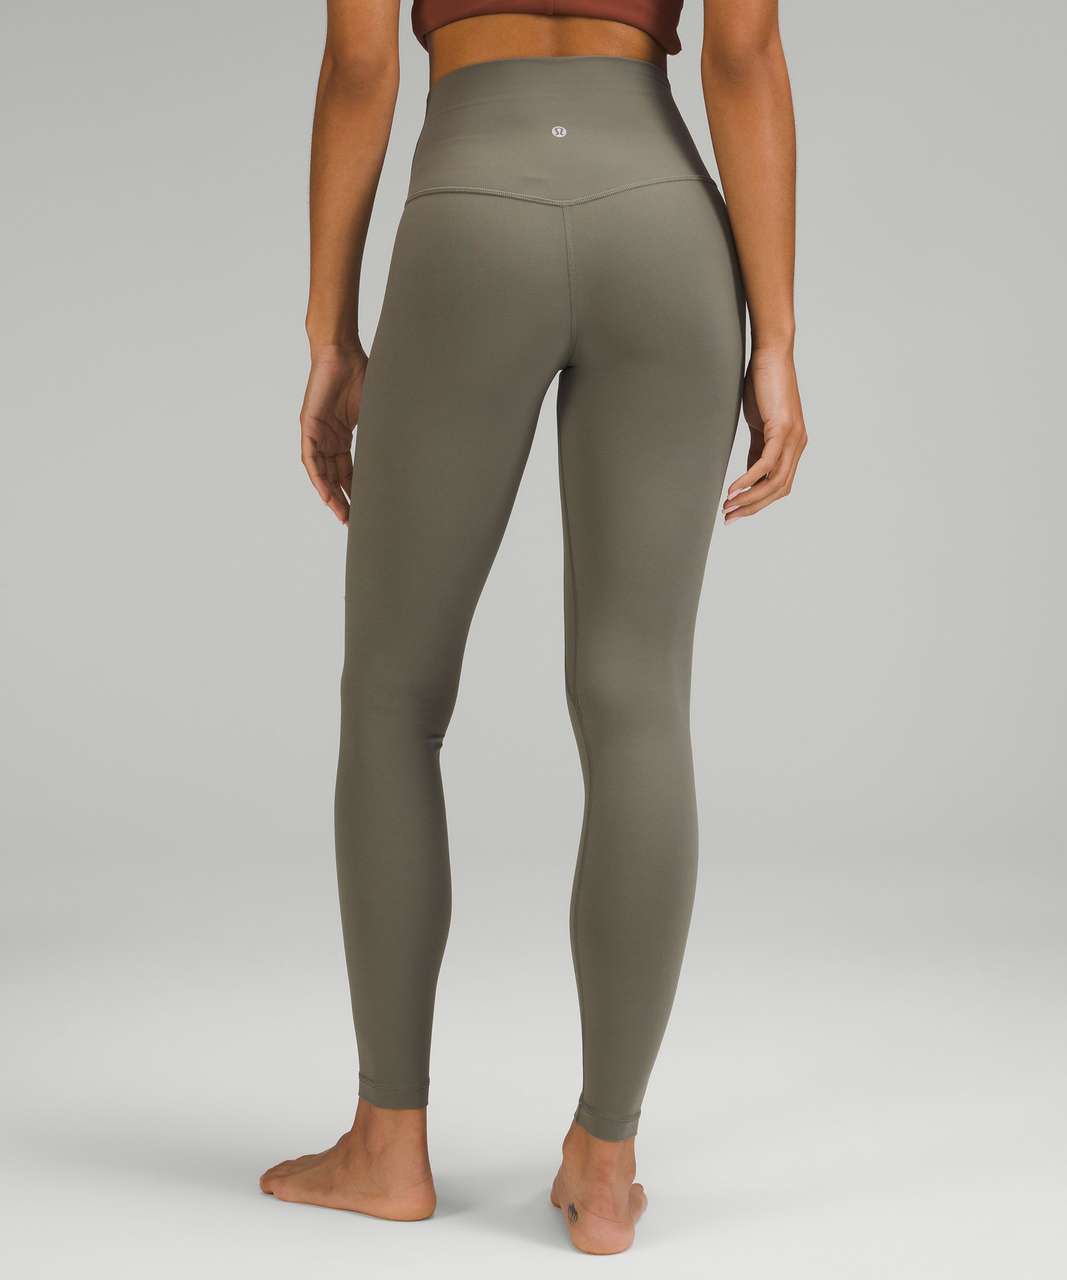 Stylish Lululemon Align Pant 28 for Active Women